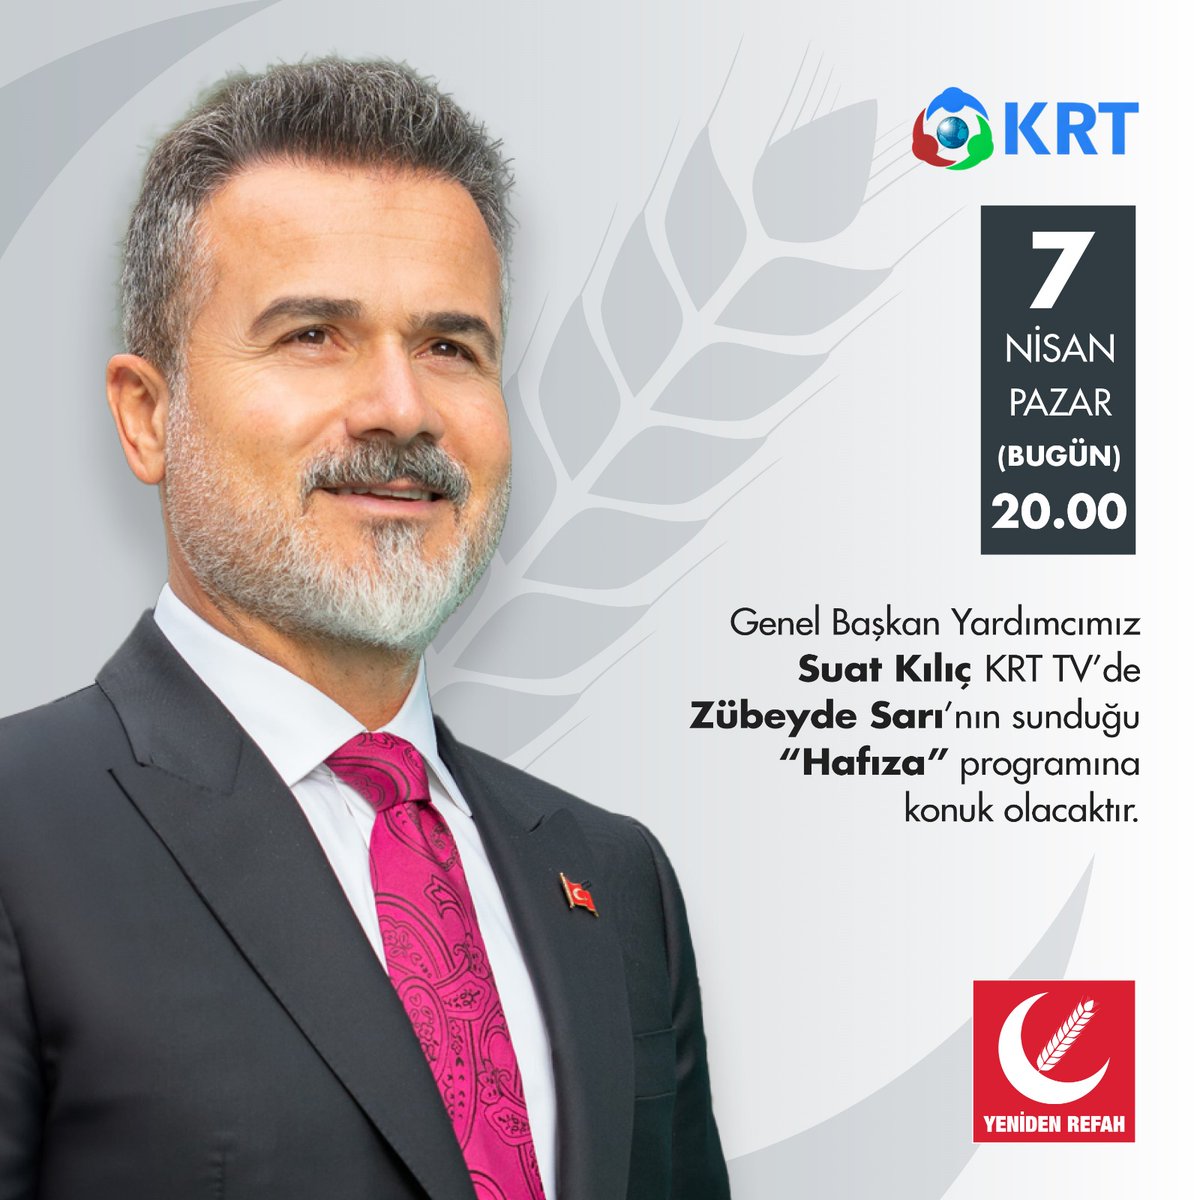 Genel Başkan Yardımcımız Suat Kılıç KRT TV’de Zübeyde Sarı’nın sunduğu “Hafıza” programına konuk olacaktır. 📅 7 Nisan Pazar (Bugün) 🕐 20.00 📡 KRT TV